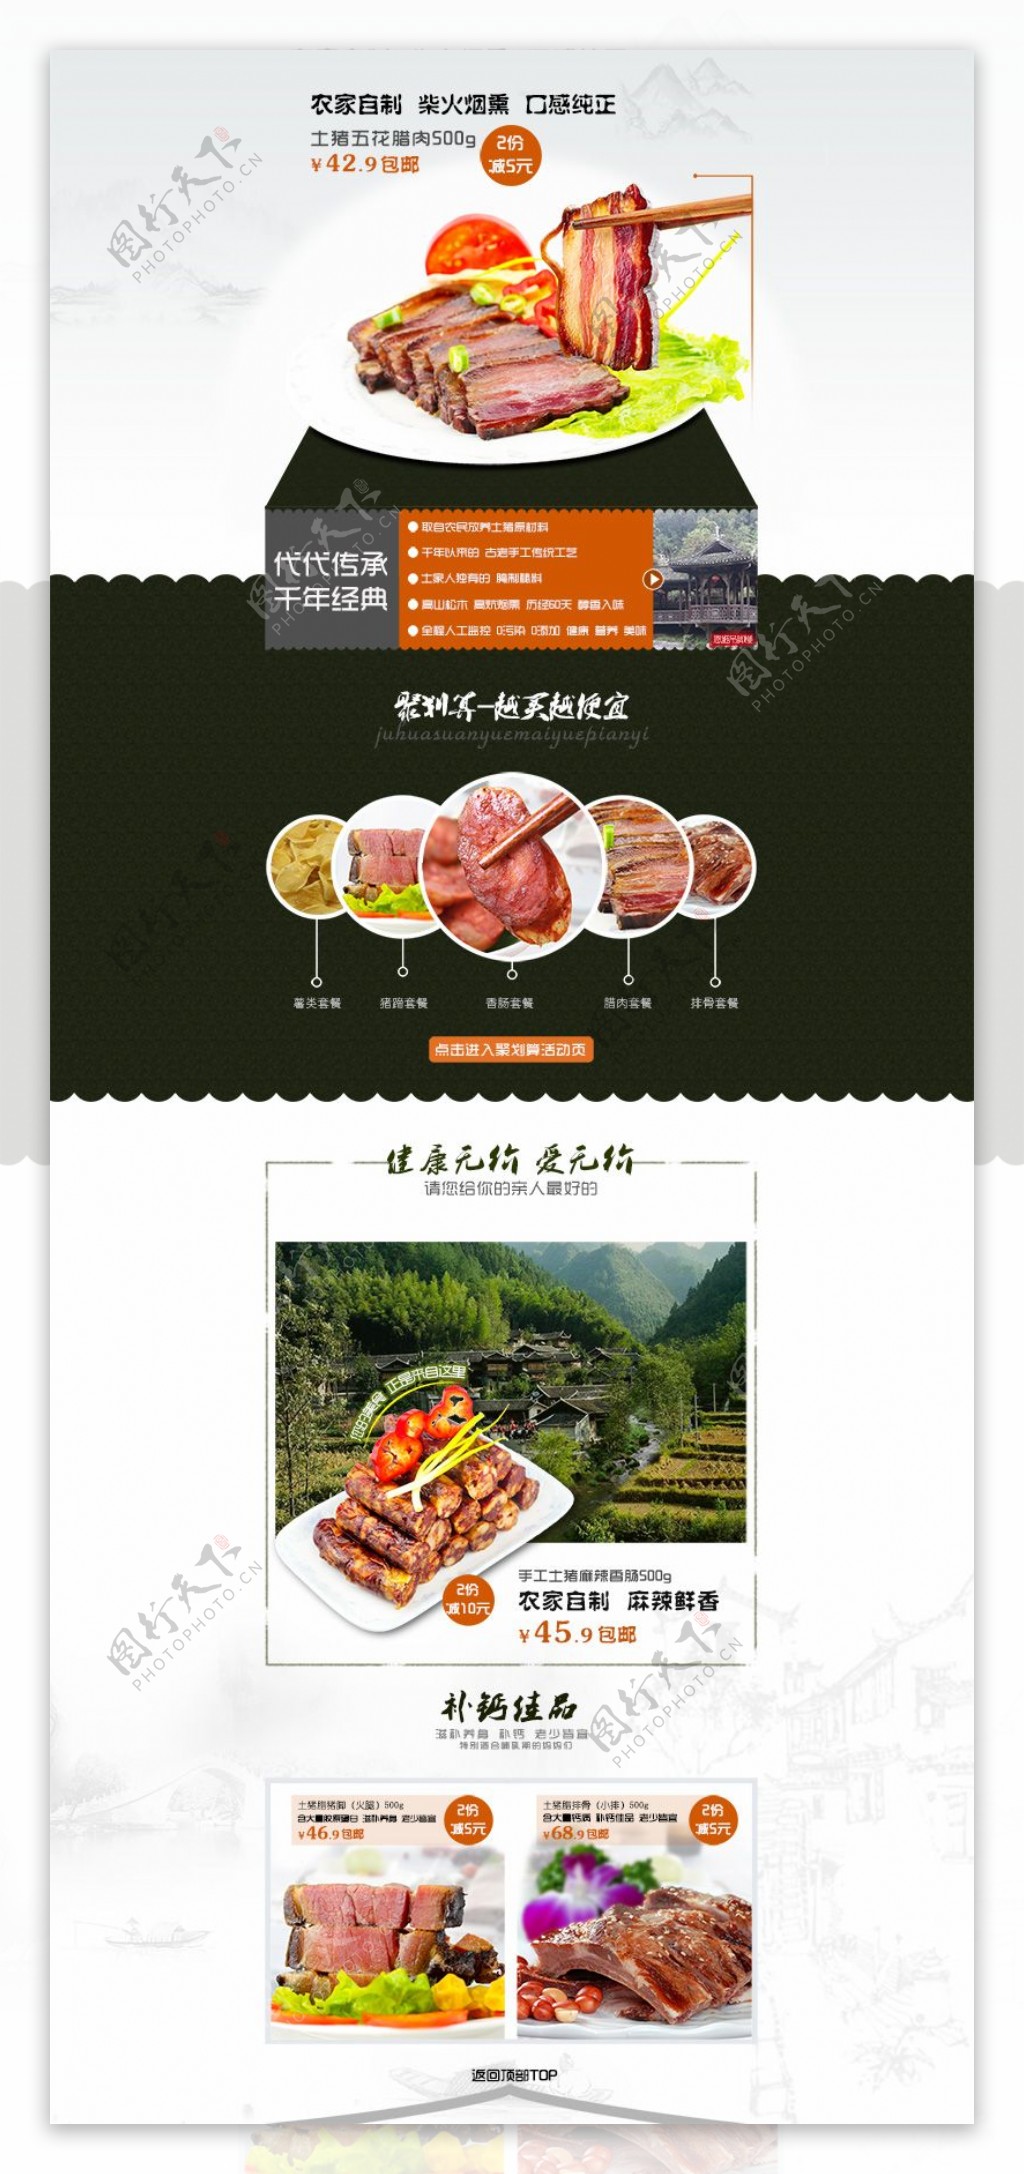 天猫淘宝首页美食品中国风模板高清PSD